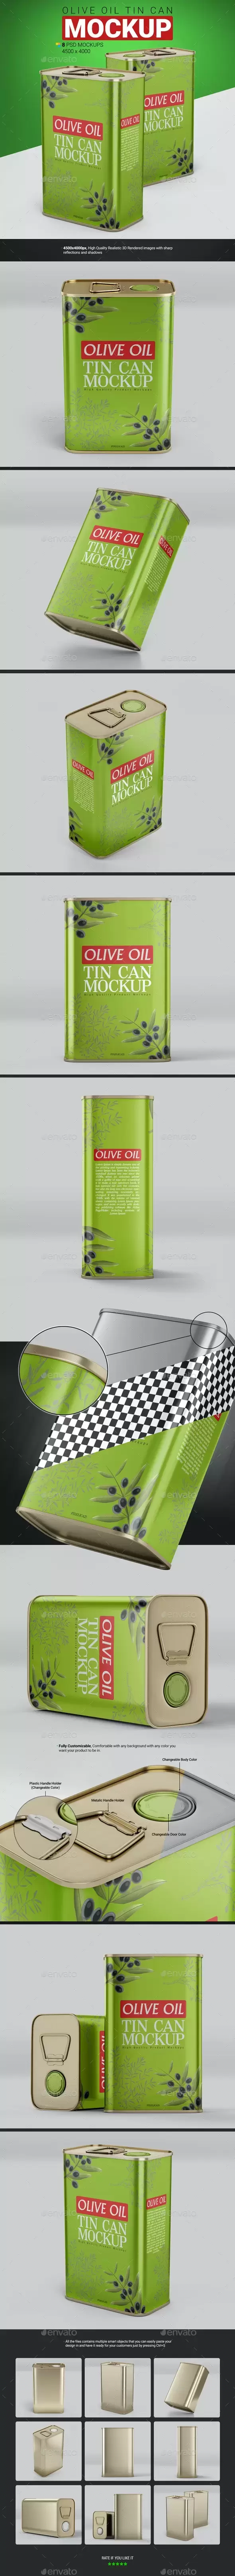 橄榄油锡罐包装设计样机 (psd)免费下载插图